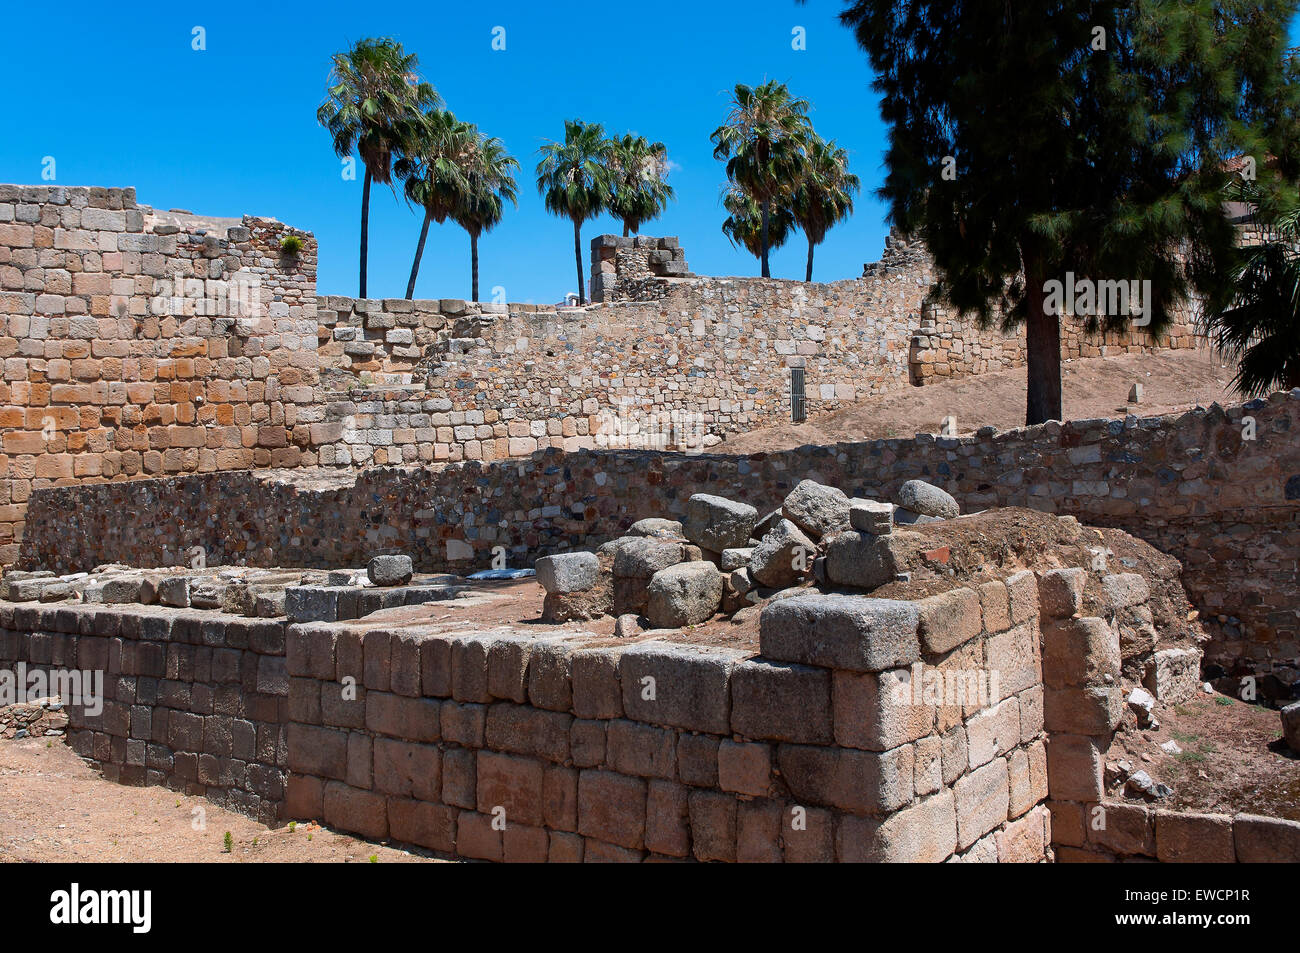 Murs Alcazaba, Merida, Badajoz province, région de l'Estrémadure, Espagne, Europe Banque D'Images